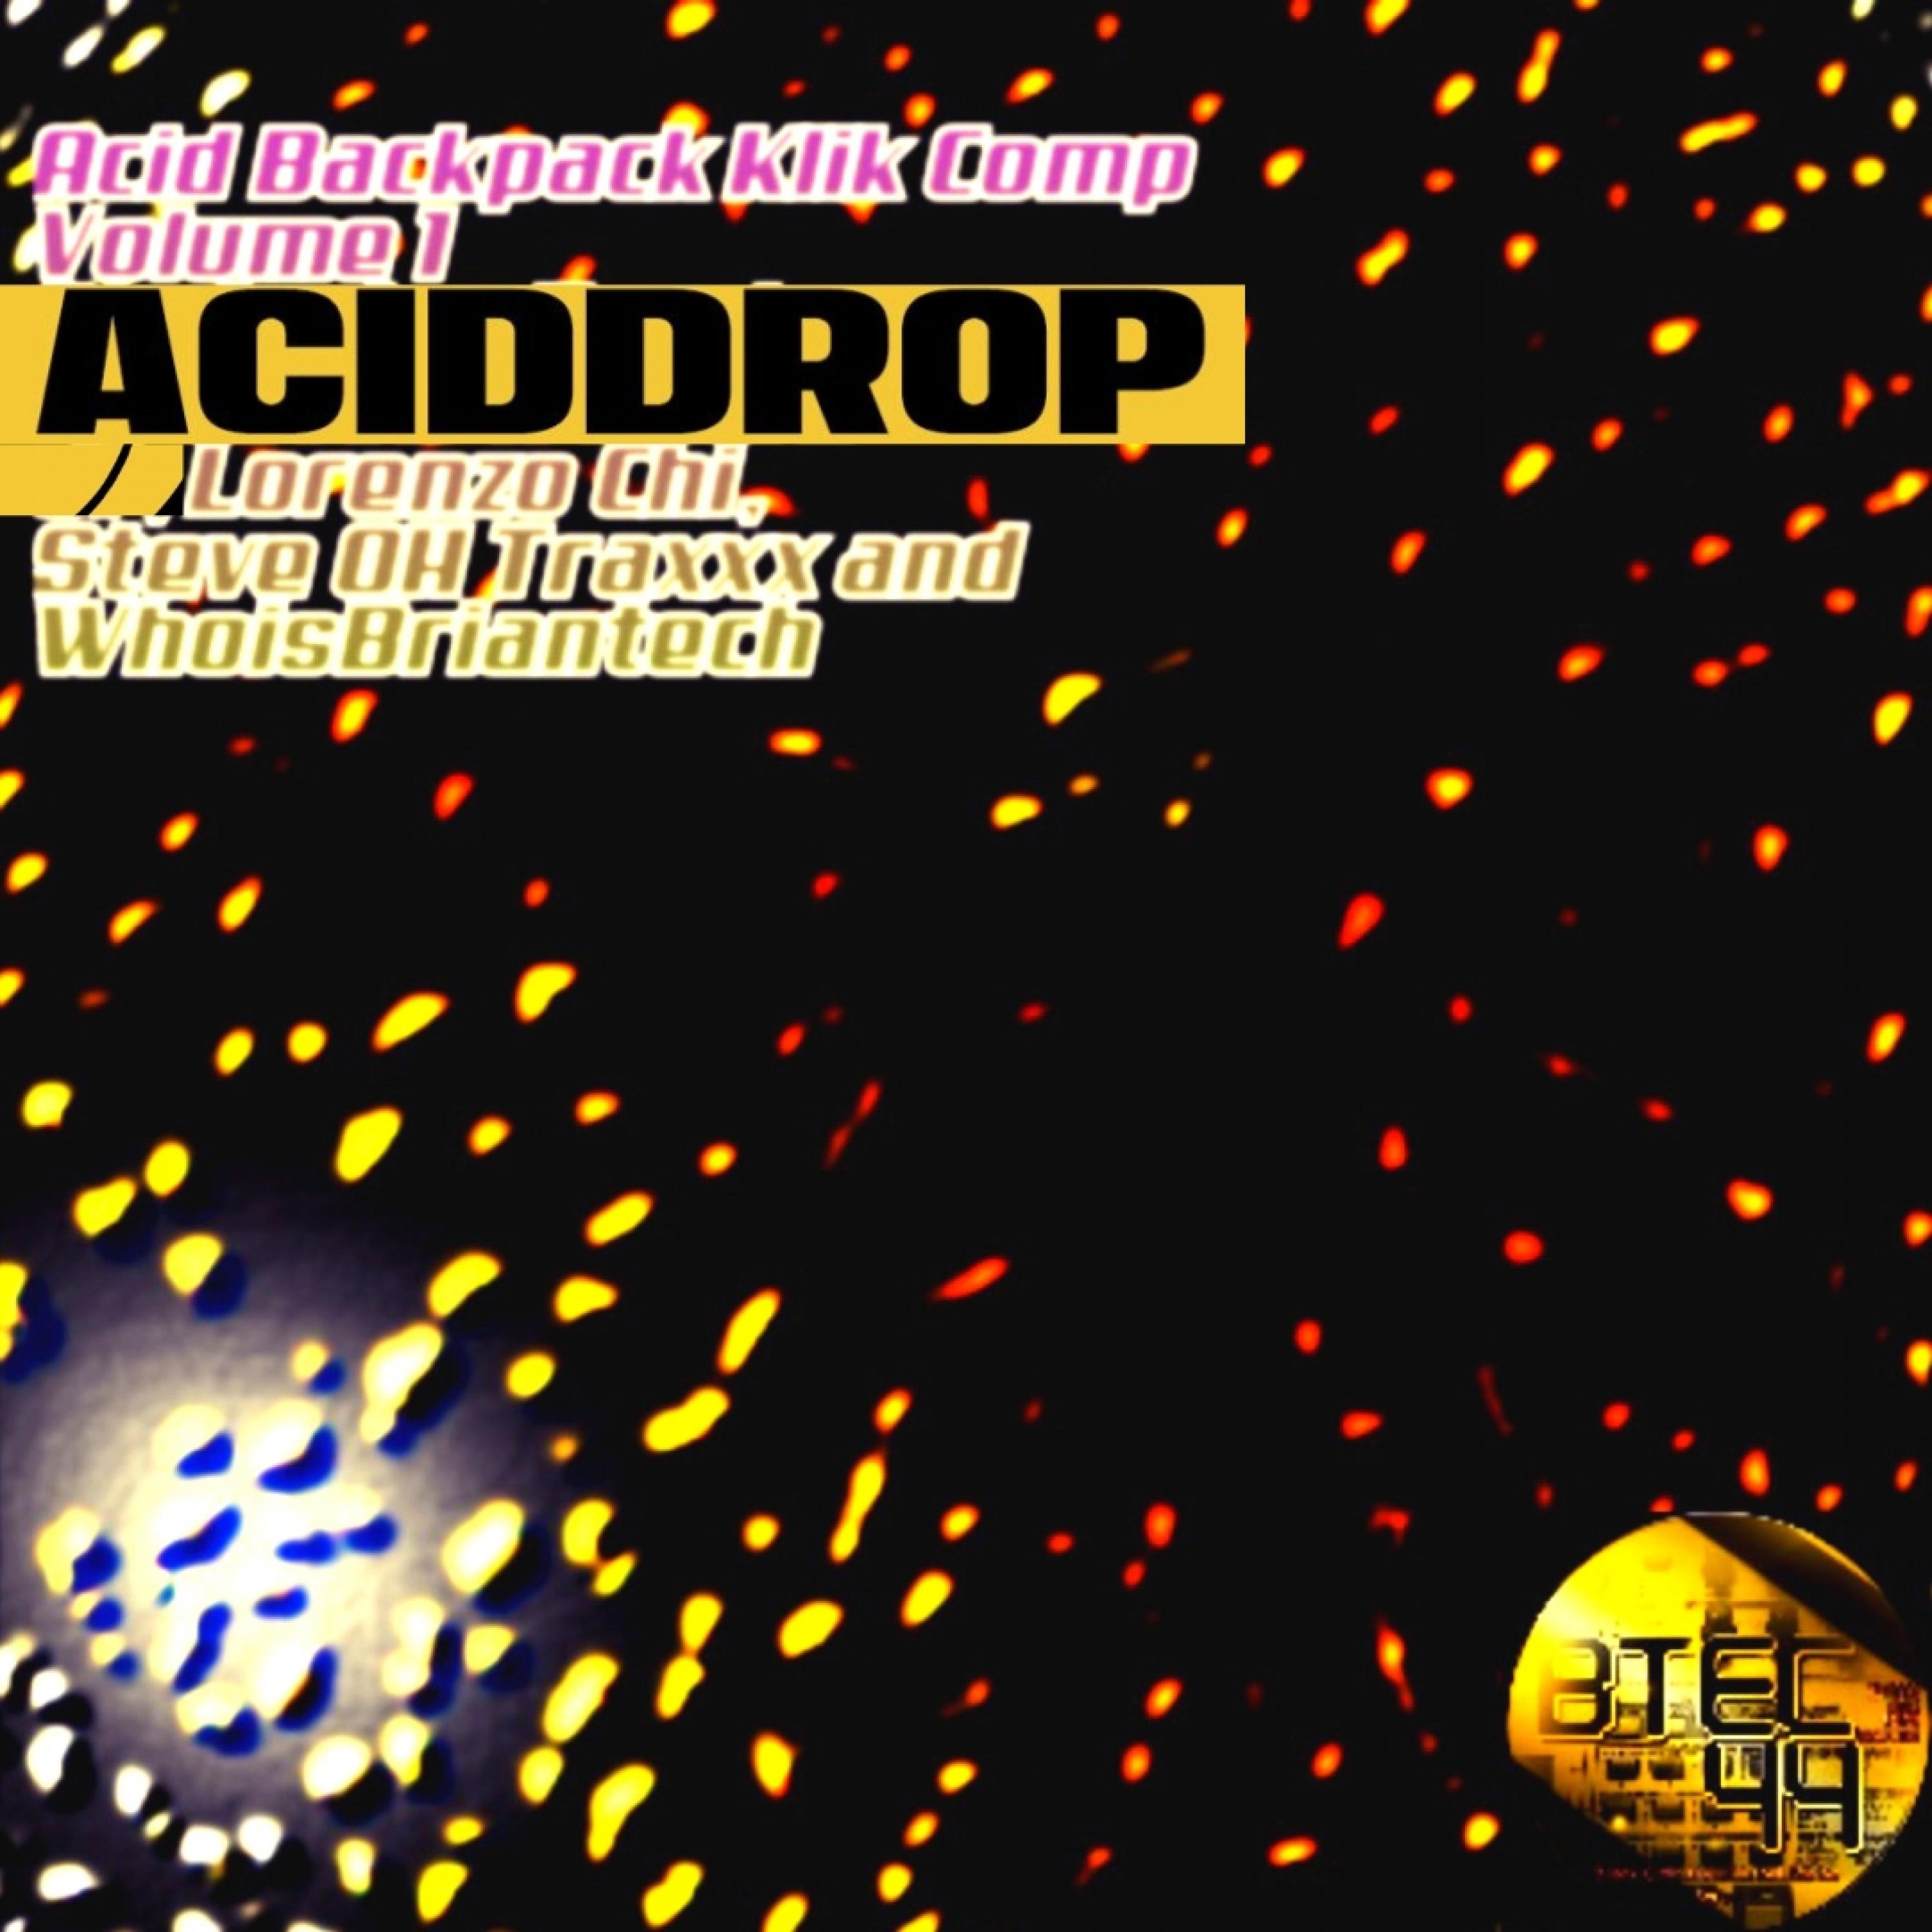 Acid Backpack Klik Compilation, Vol. 1 (Vol.1)